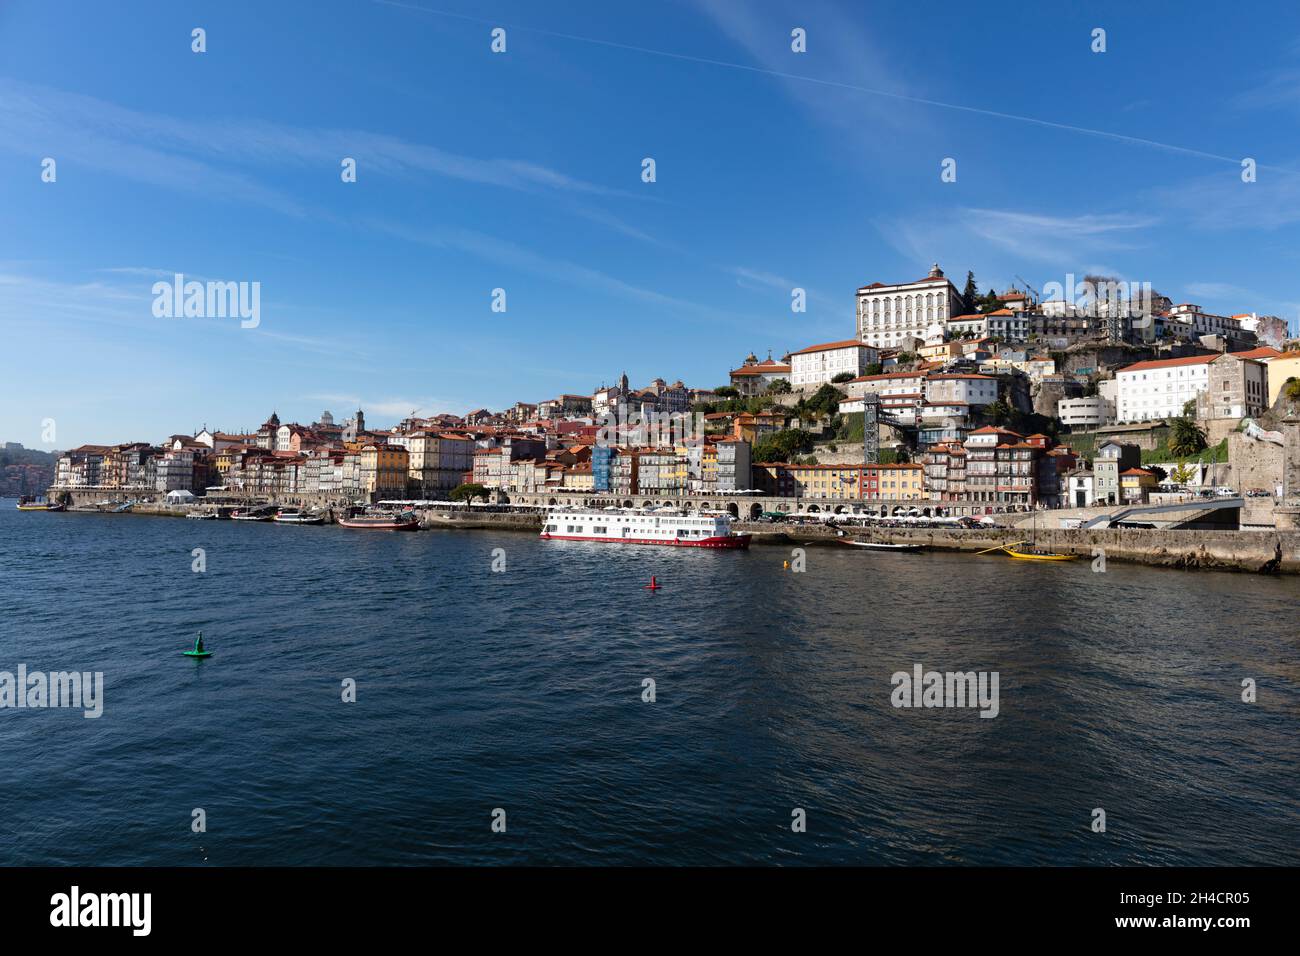 Panoramablick auf die Altstadt von Porto. Direkt zu sehen der Fluss Douro an den Porto liegt. Stock Photo